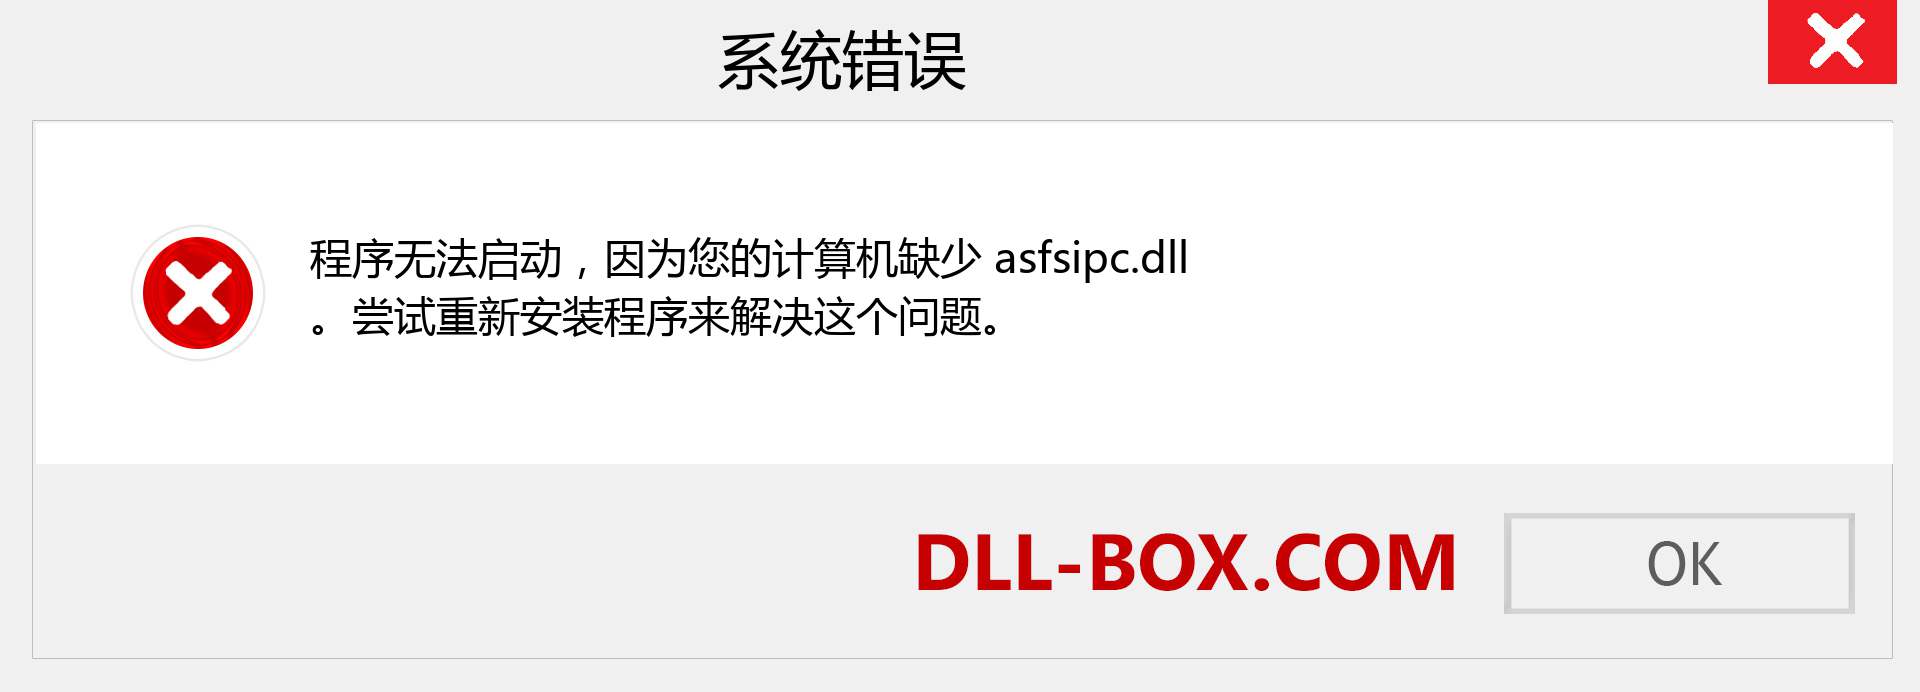 asfsipc.dll 文件丢失？。 适用于 Windows 7、8、10 的下载 - 修复 Windows、照片、图像上的 asfsipc dll 丢失错误